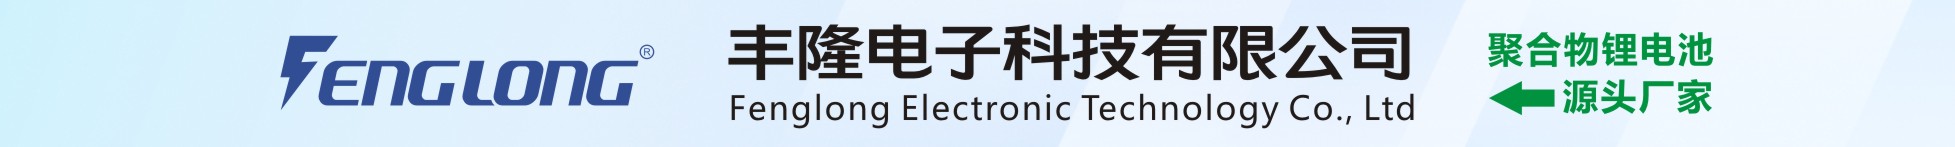 丰隆电子科技有限公司